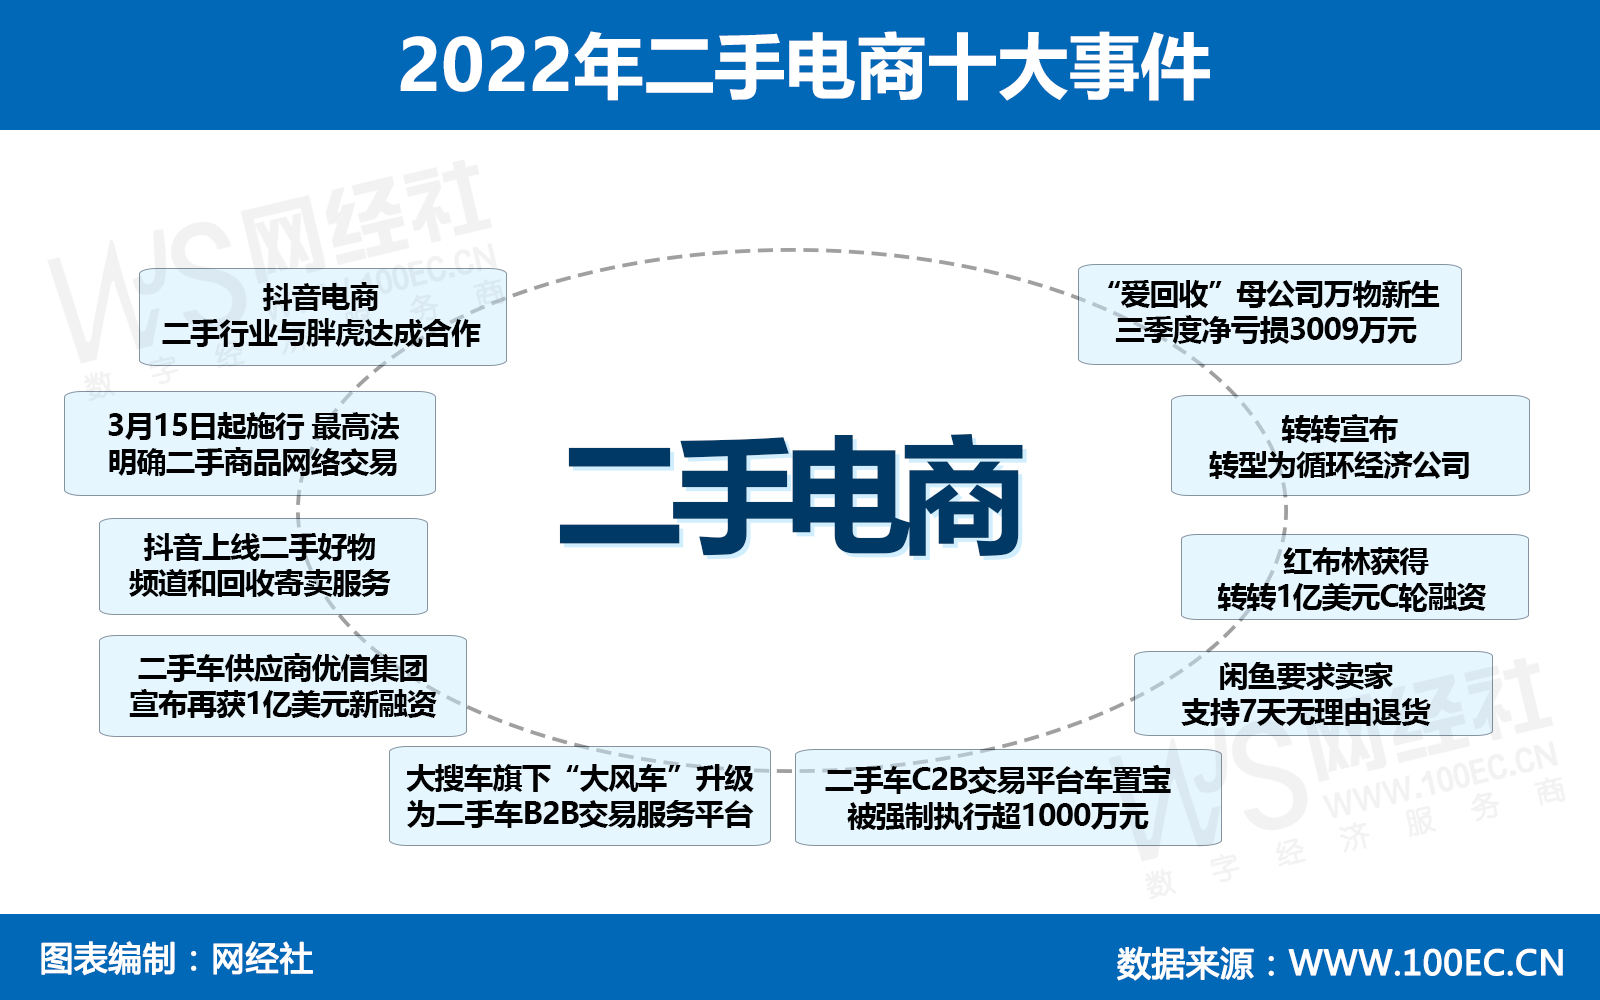 2022年二手电商十大事件(1).jpg